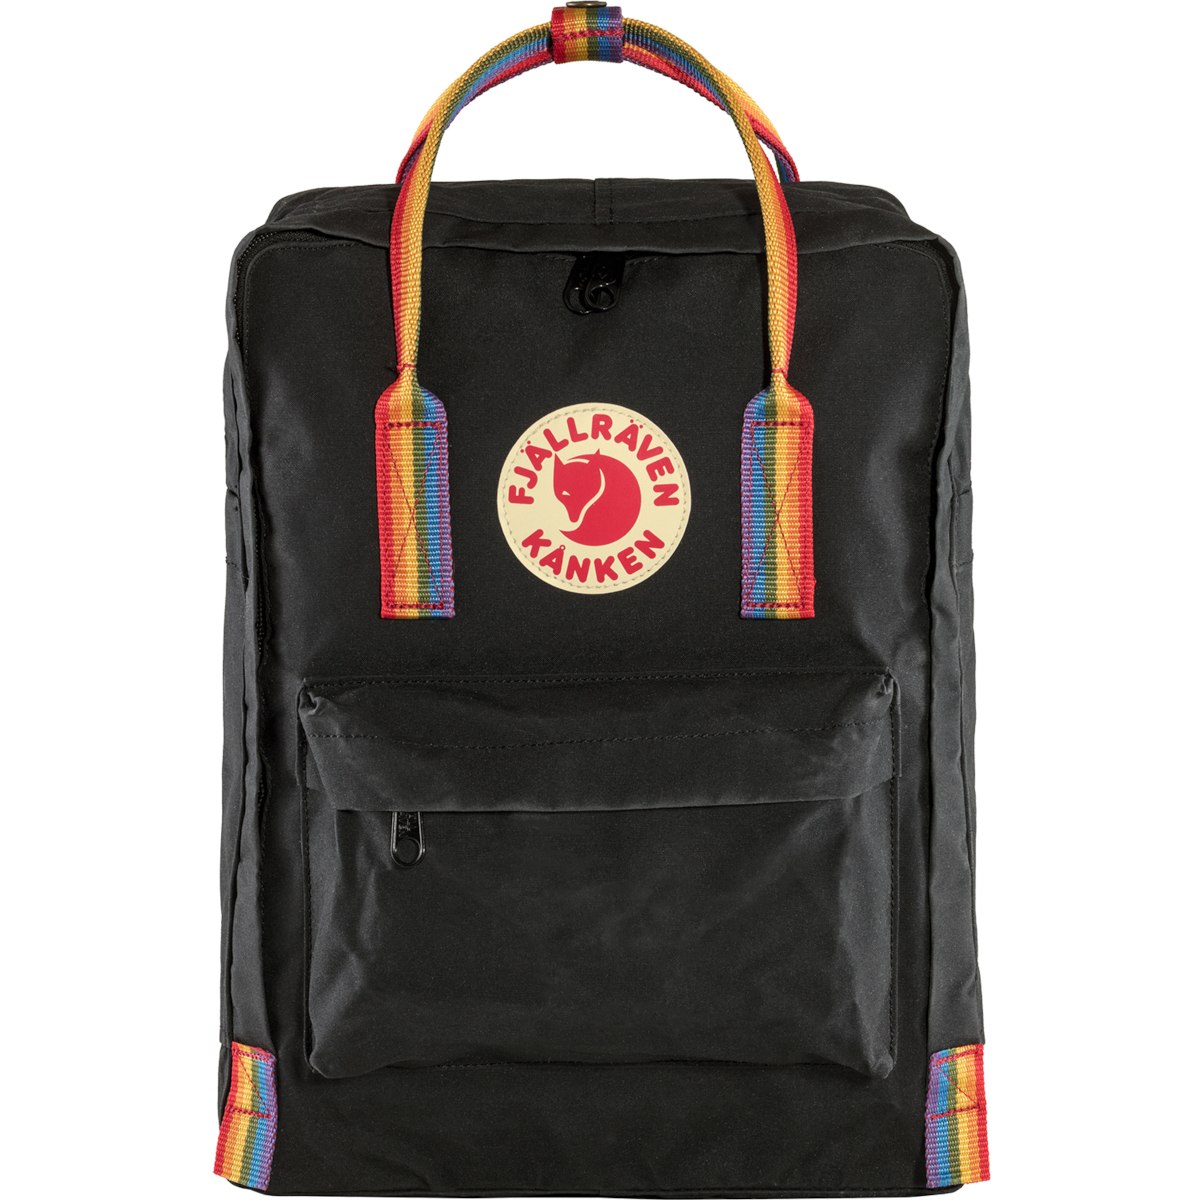 Picture of Fjällräven Kånken Rainbow Backpack - black/rainbow pattern